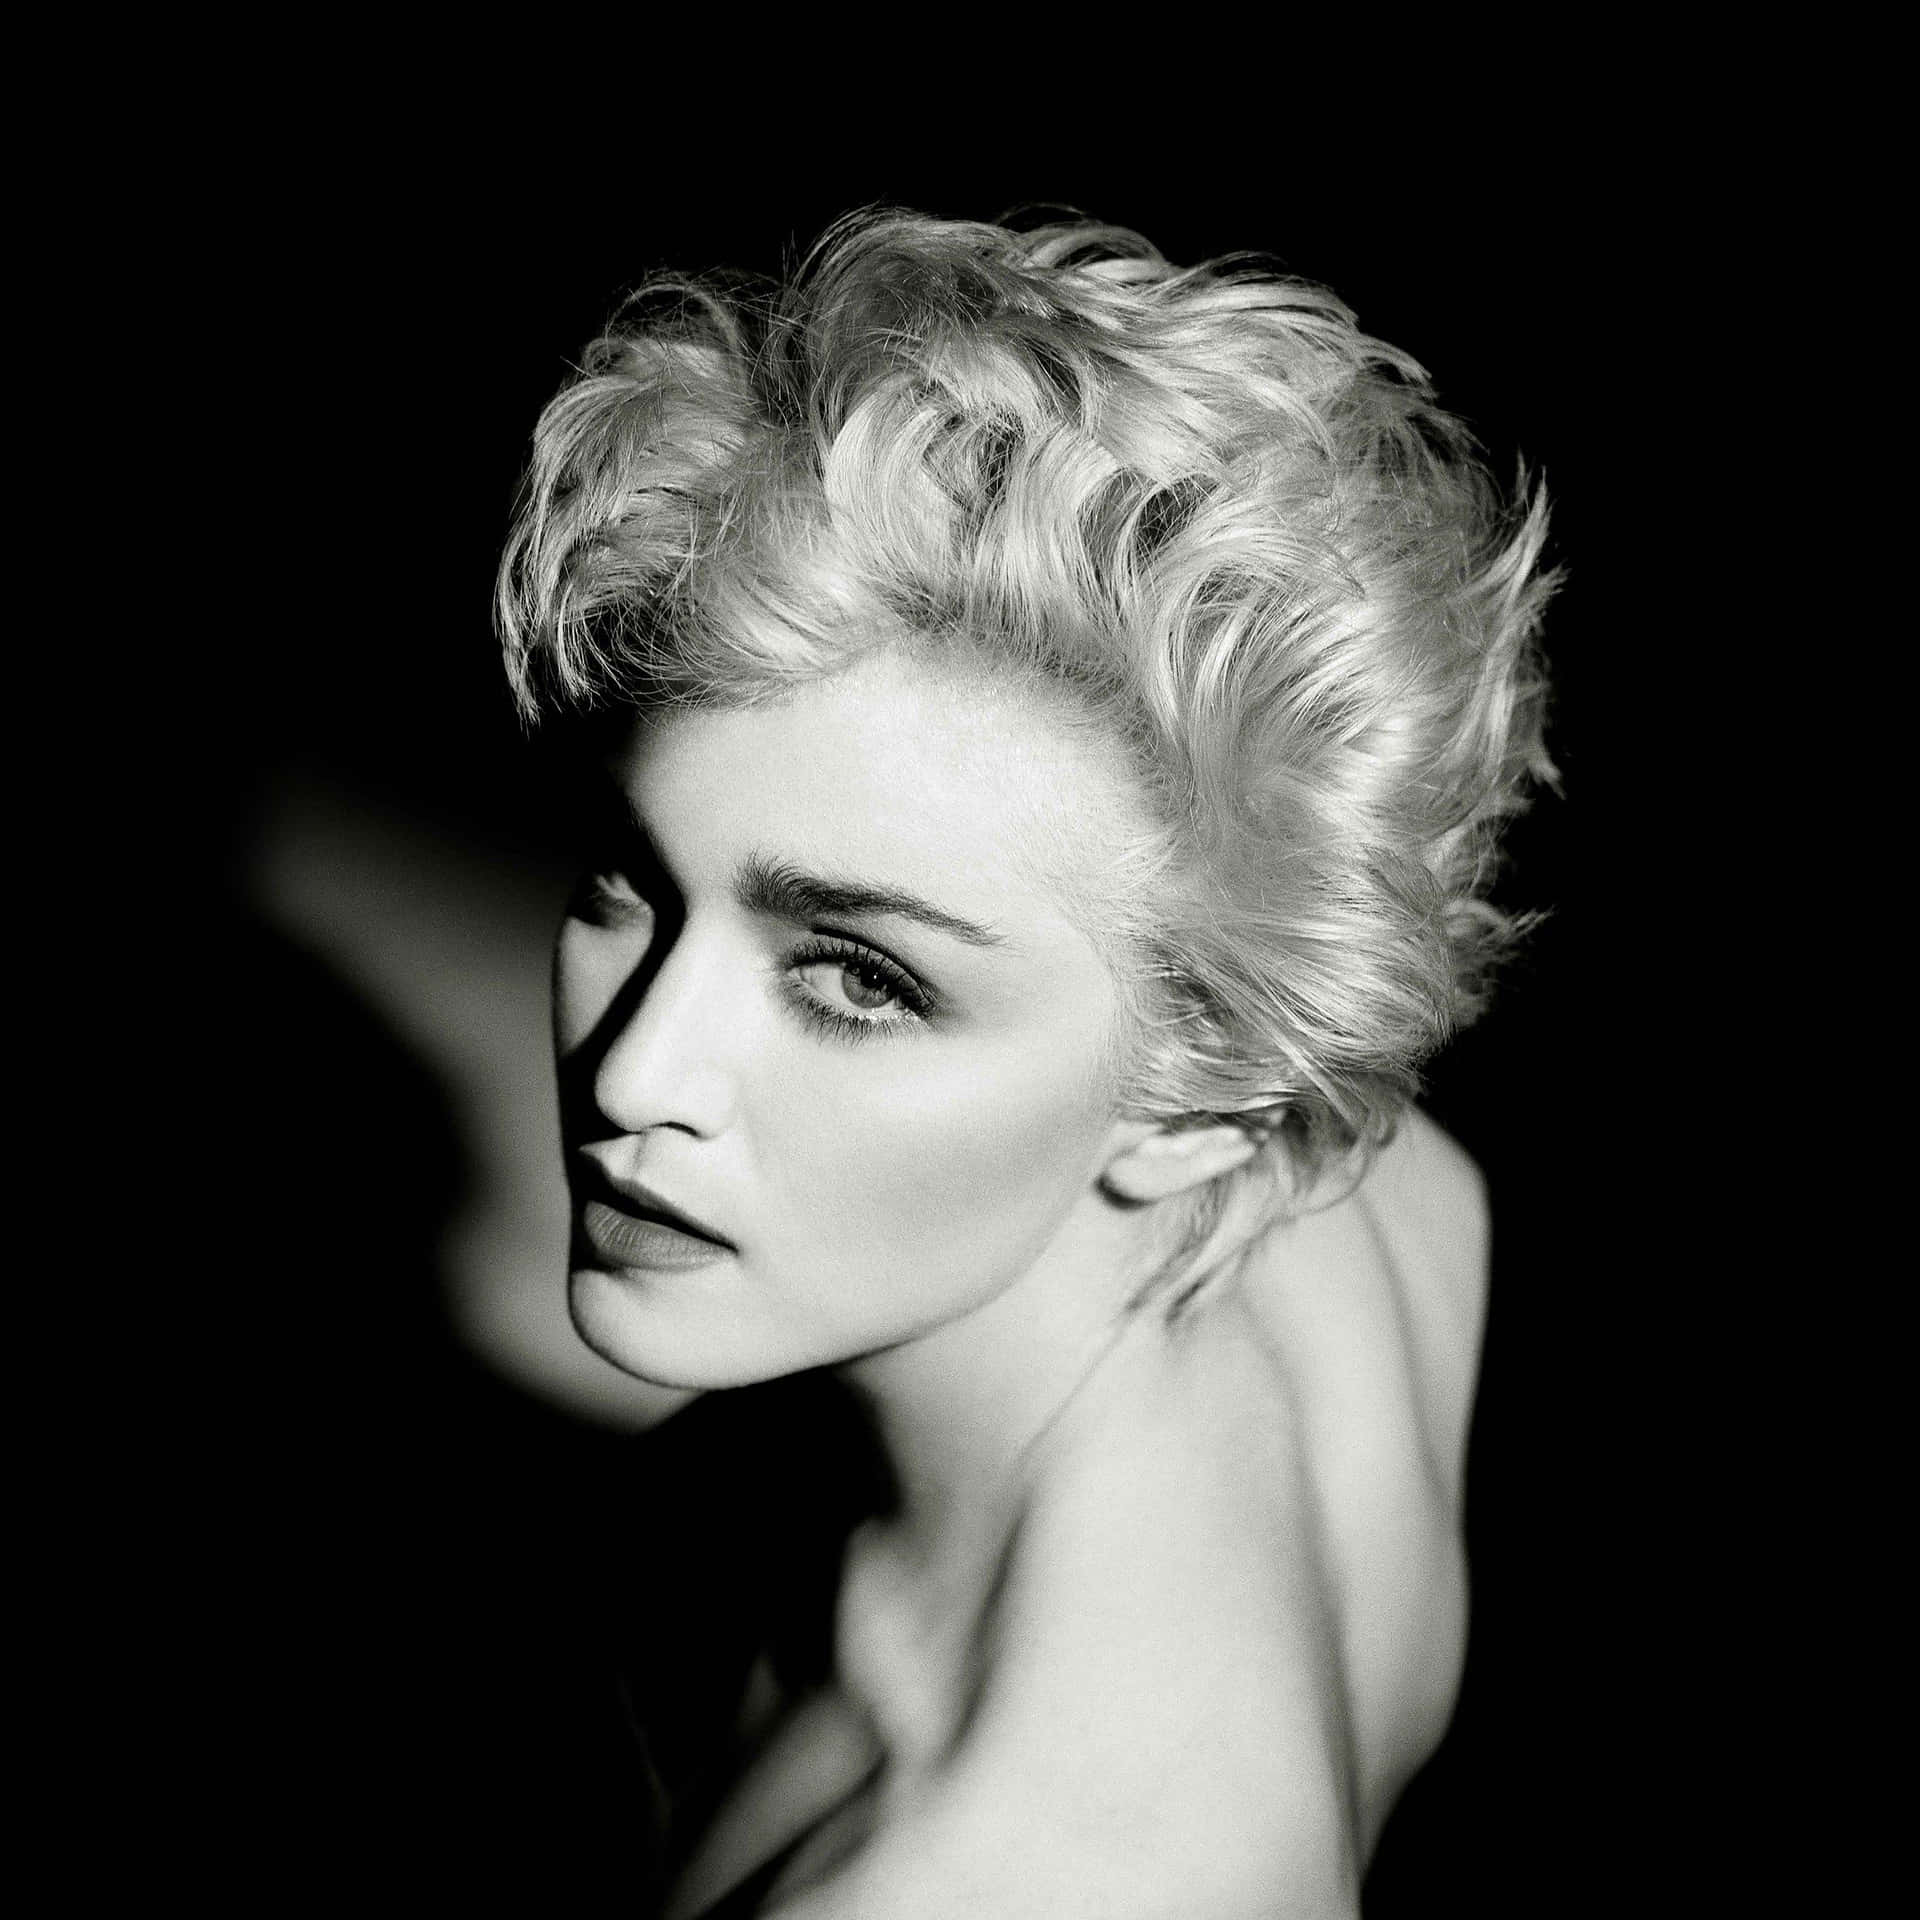 Madonna, Queen of Pop